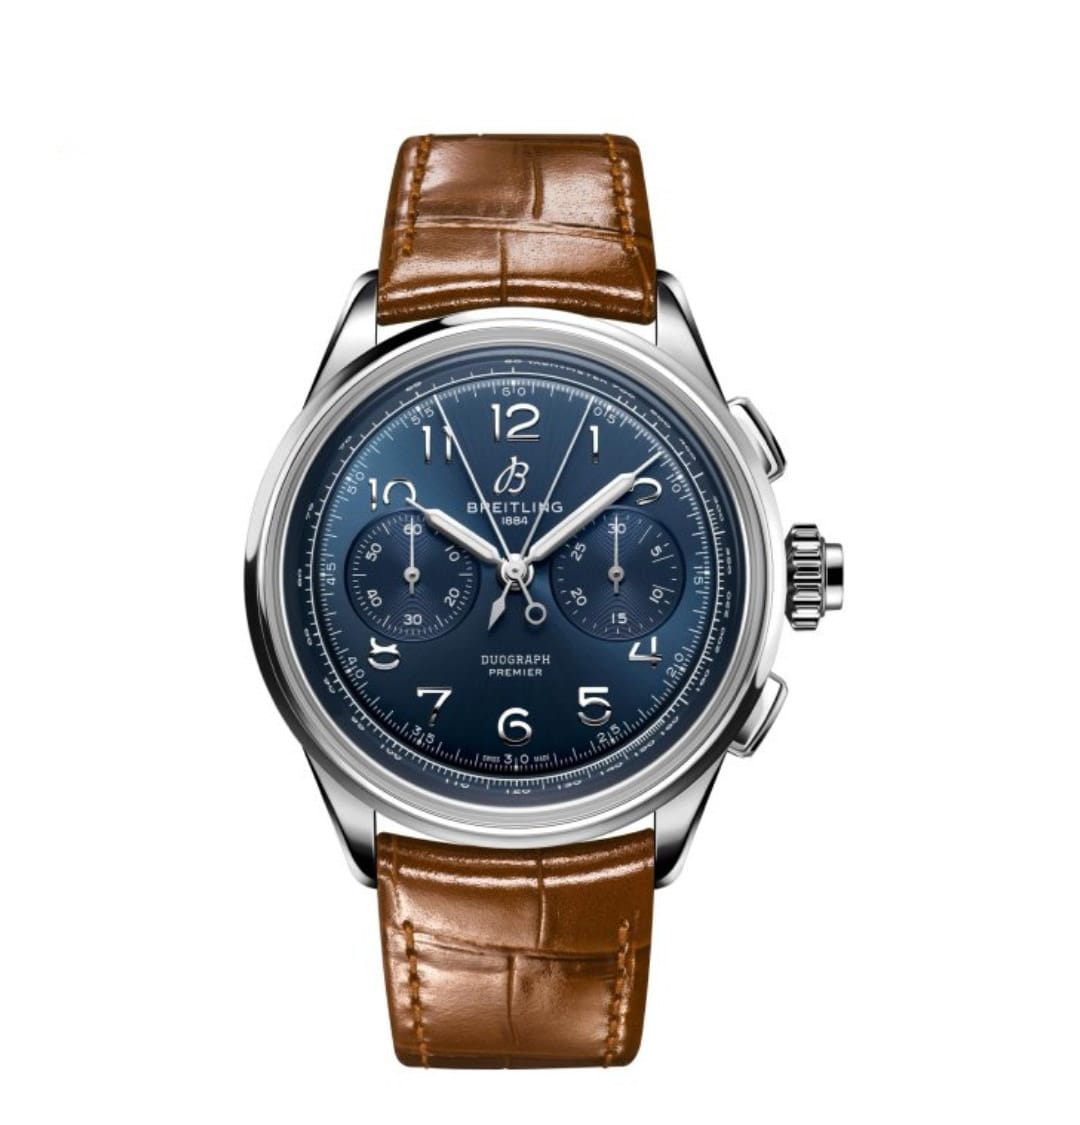 Reloj Breitling Premier B01 NORTON